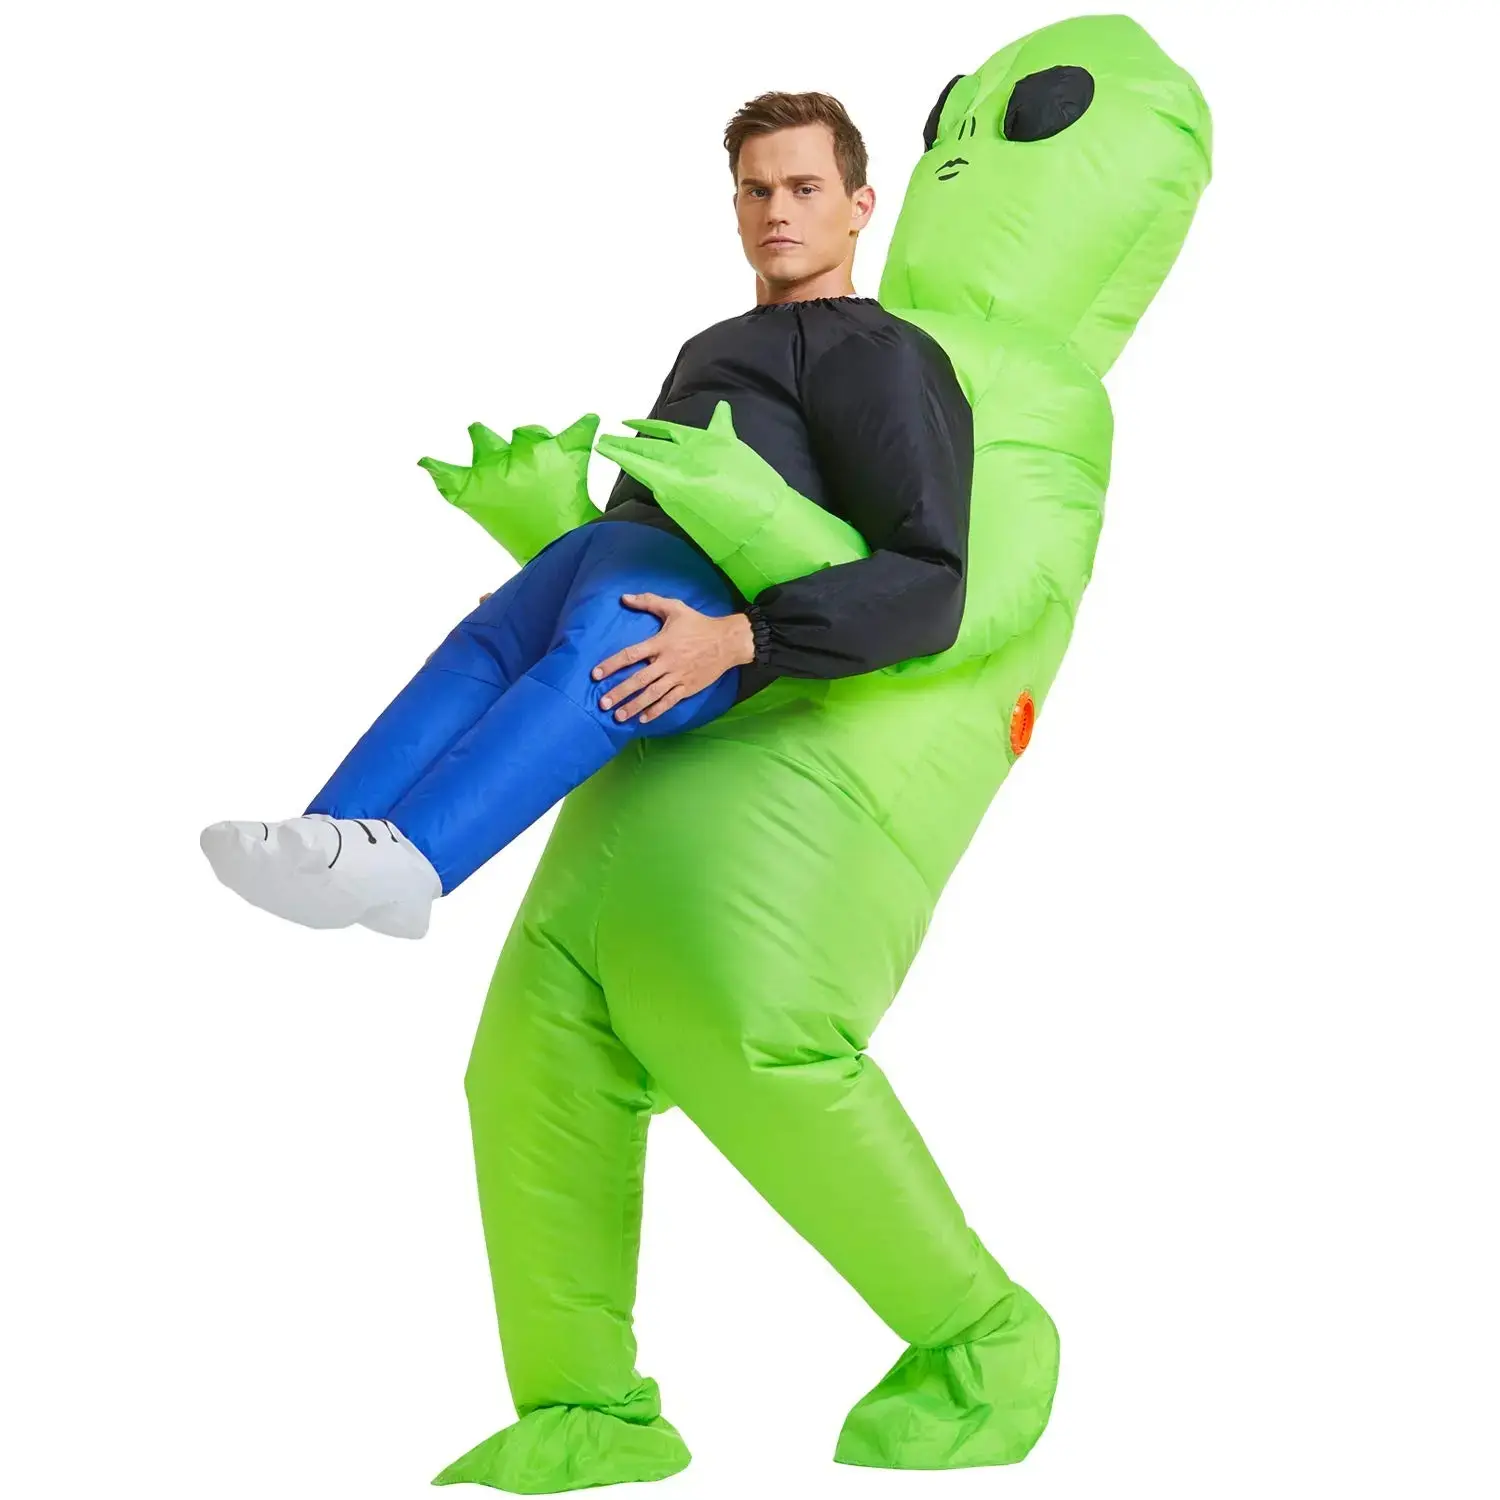 Hersteller liefern neue Ghost Hugger Green Ghost Alien Kostüm Halloween Party Performance Kleidung Parodie ET Alien aufblasbar